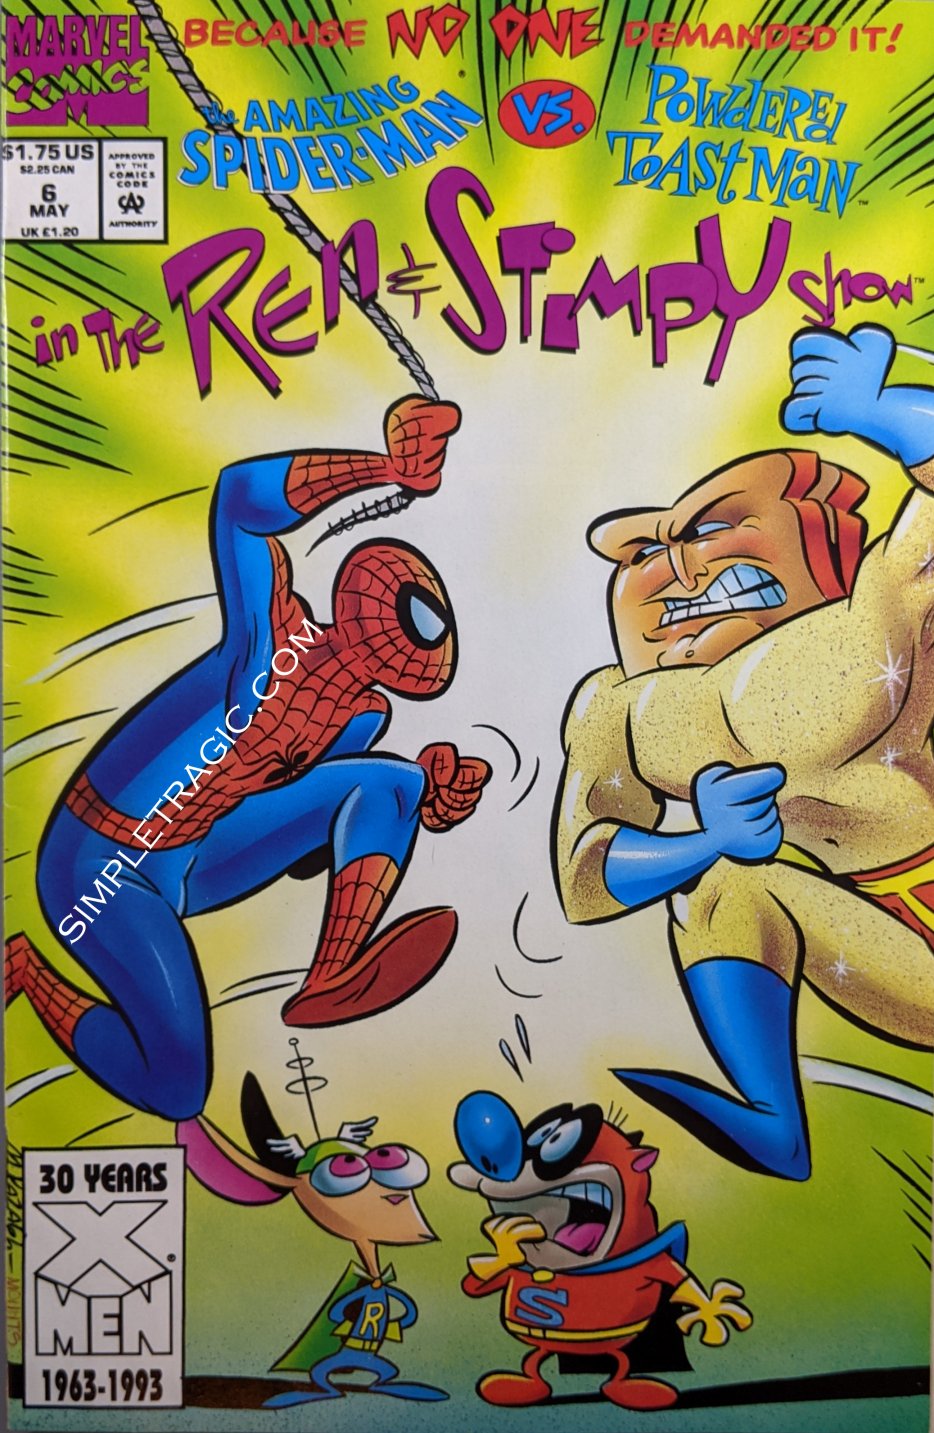 Ren & Stimpy Show #6 Comic Book Cover Art